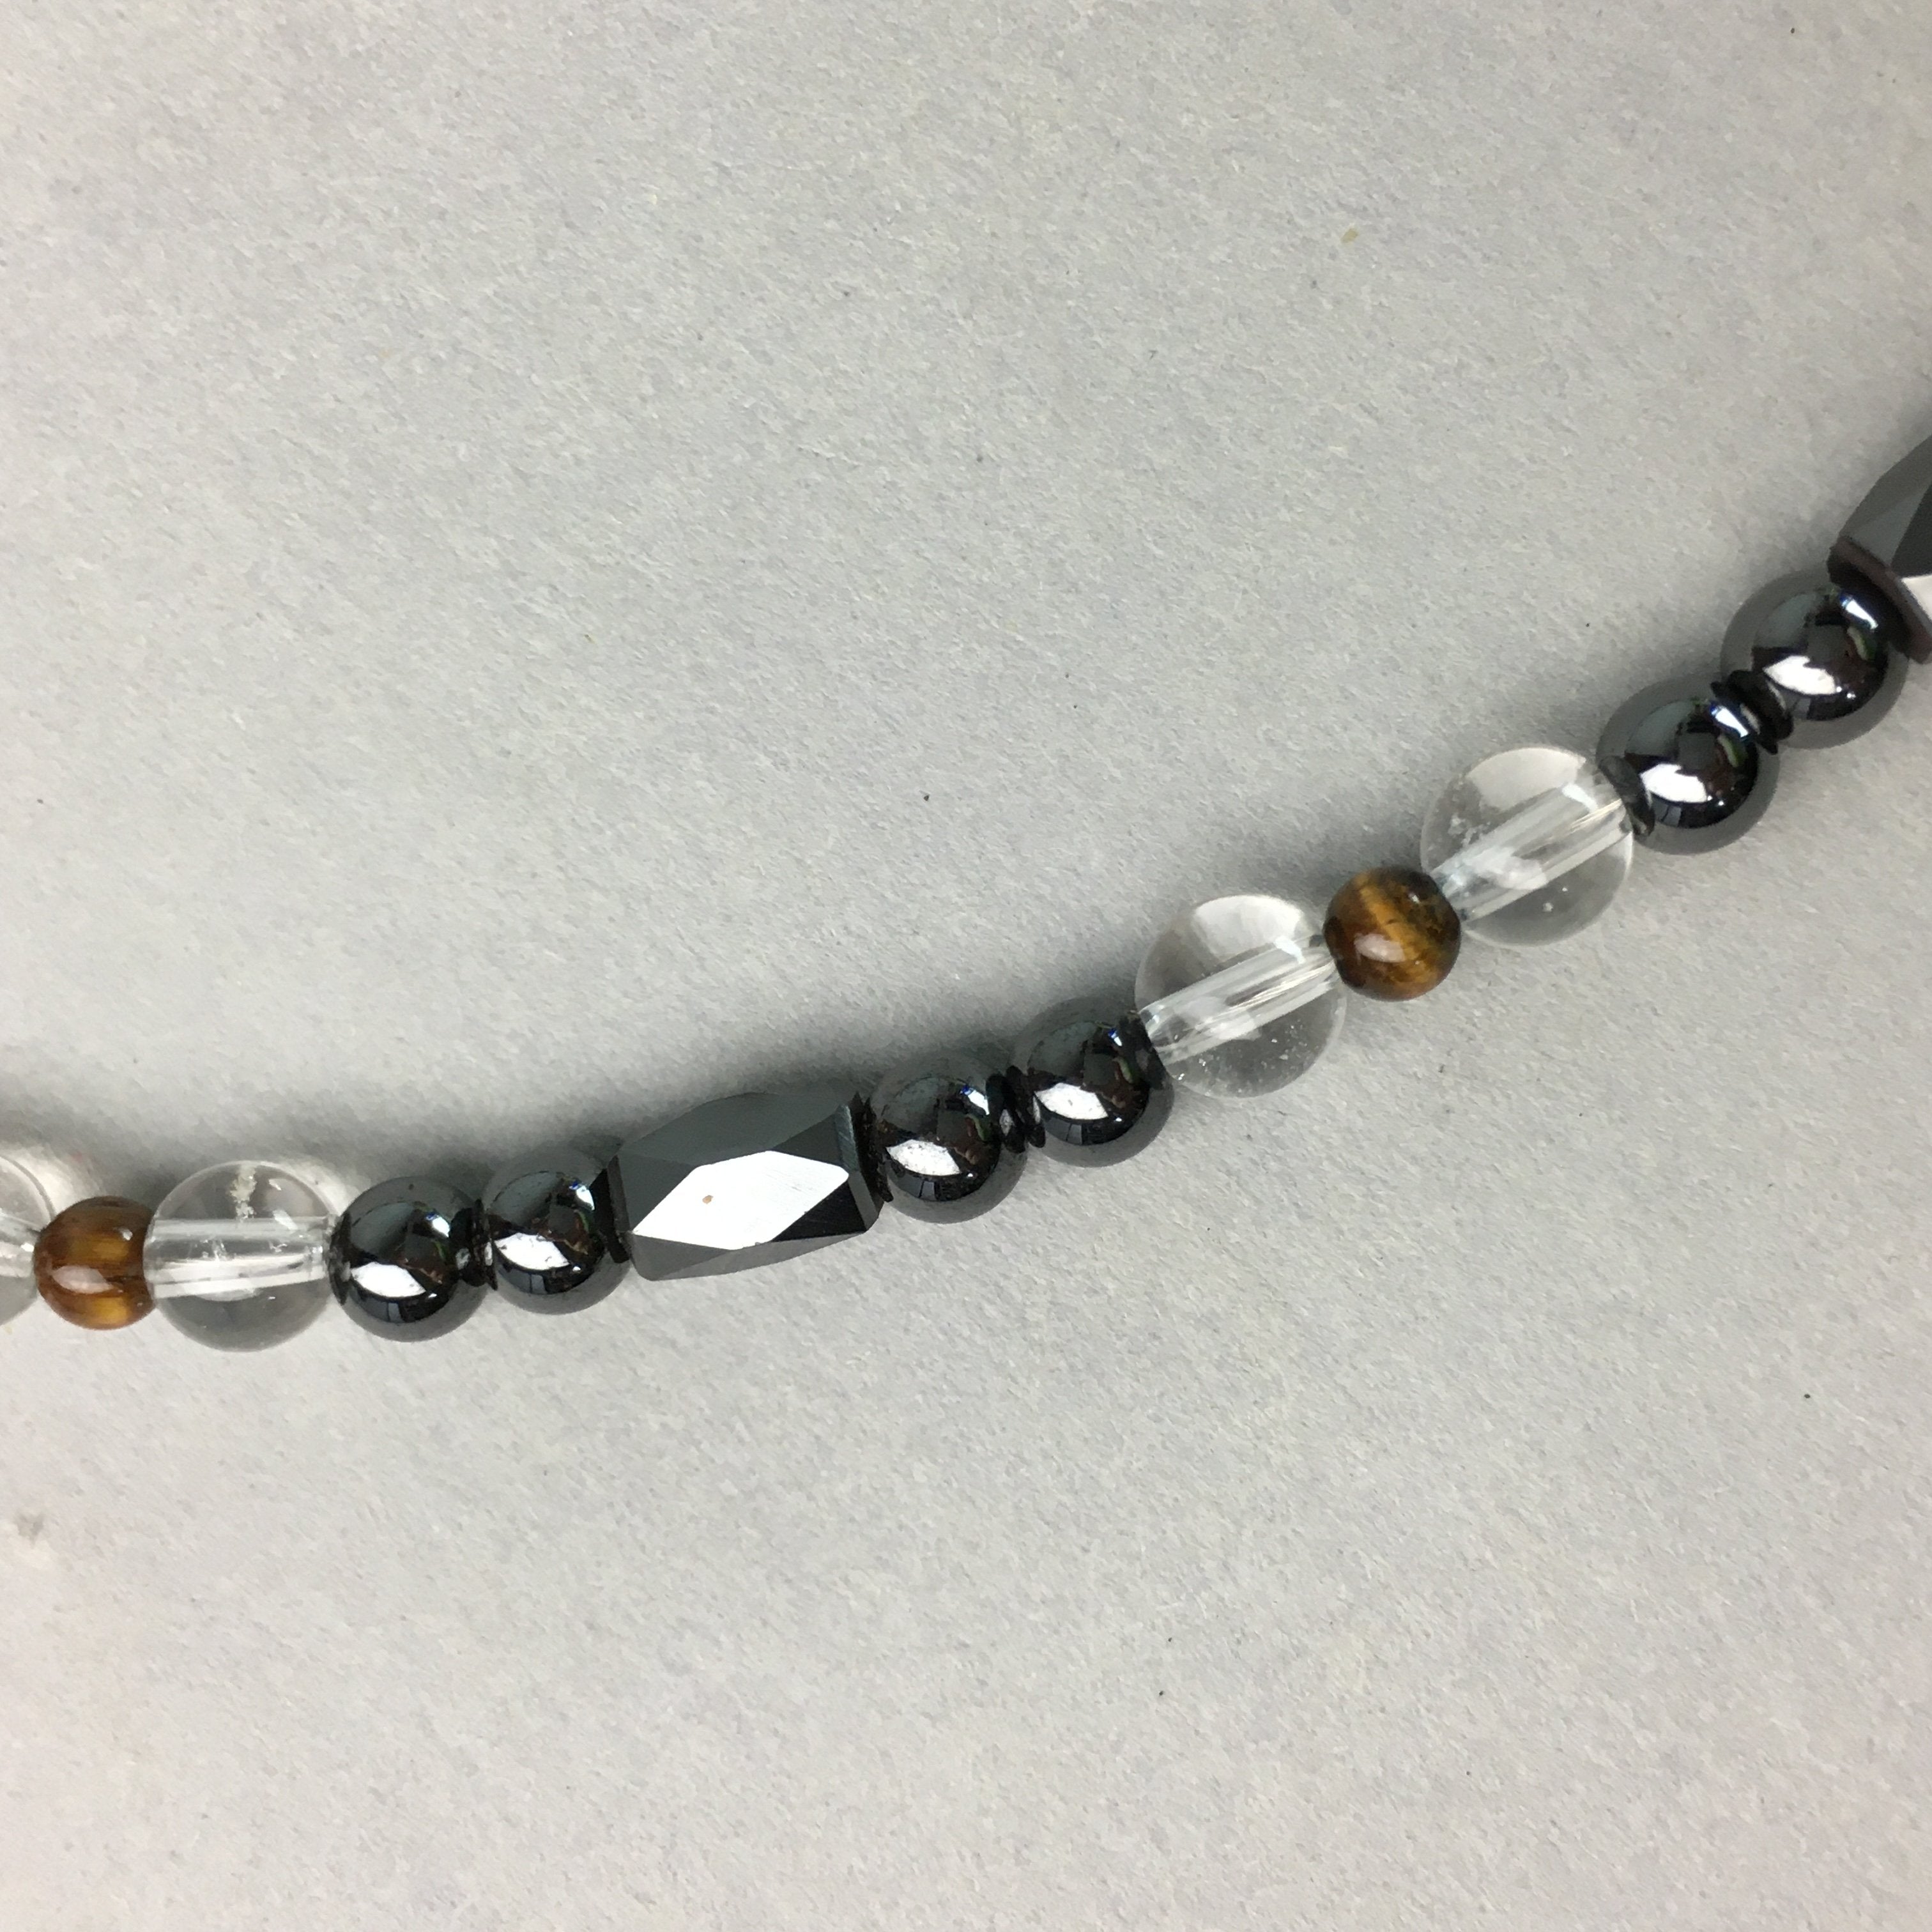 Japanese Buddhist Prayer Beads Vtg Juzu Black Stone Rosary Bracelet JZ3